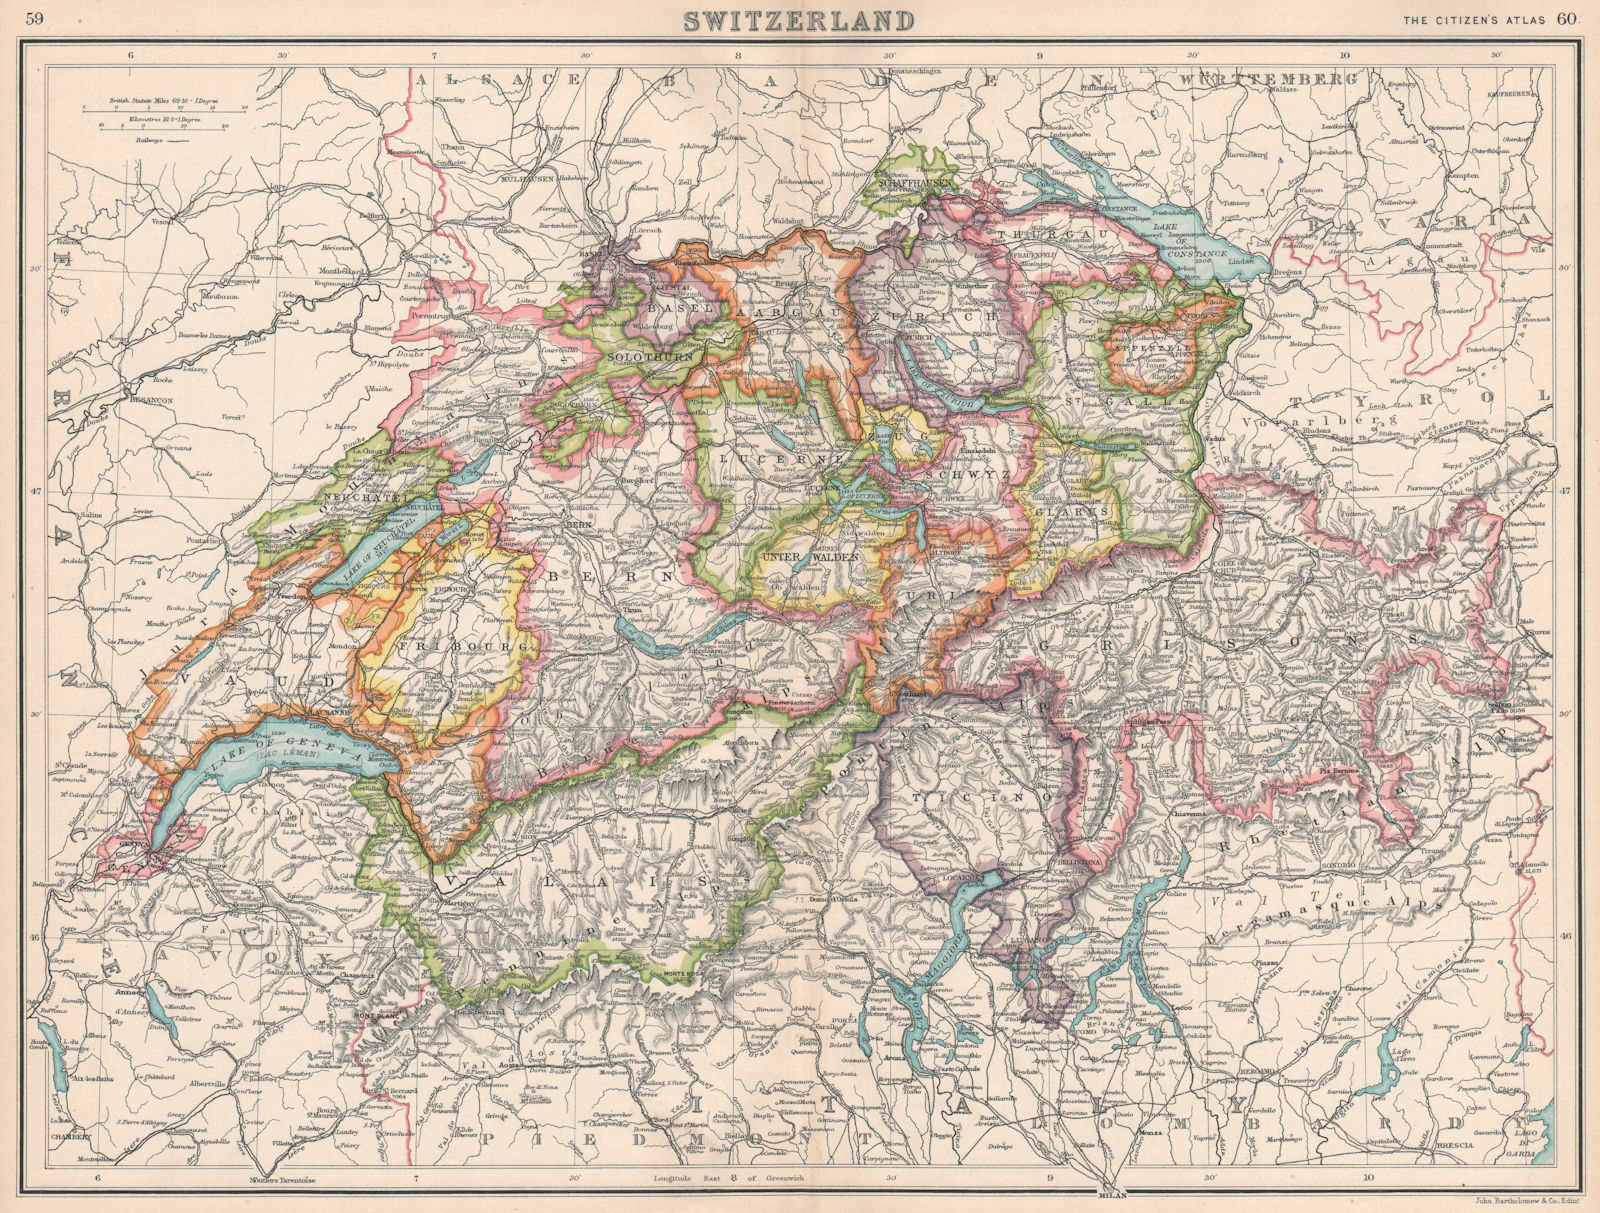 SWITZERLAND. Showing cantons & railways. BARTHOLOMEW 1912 old antique map